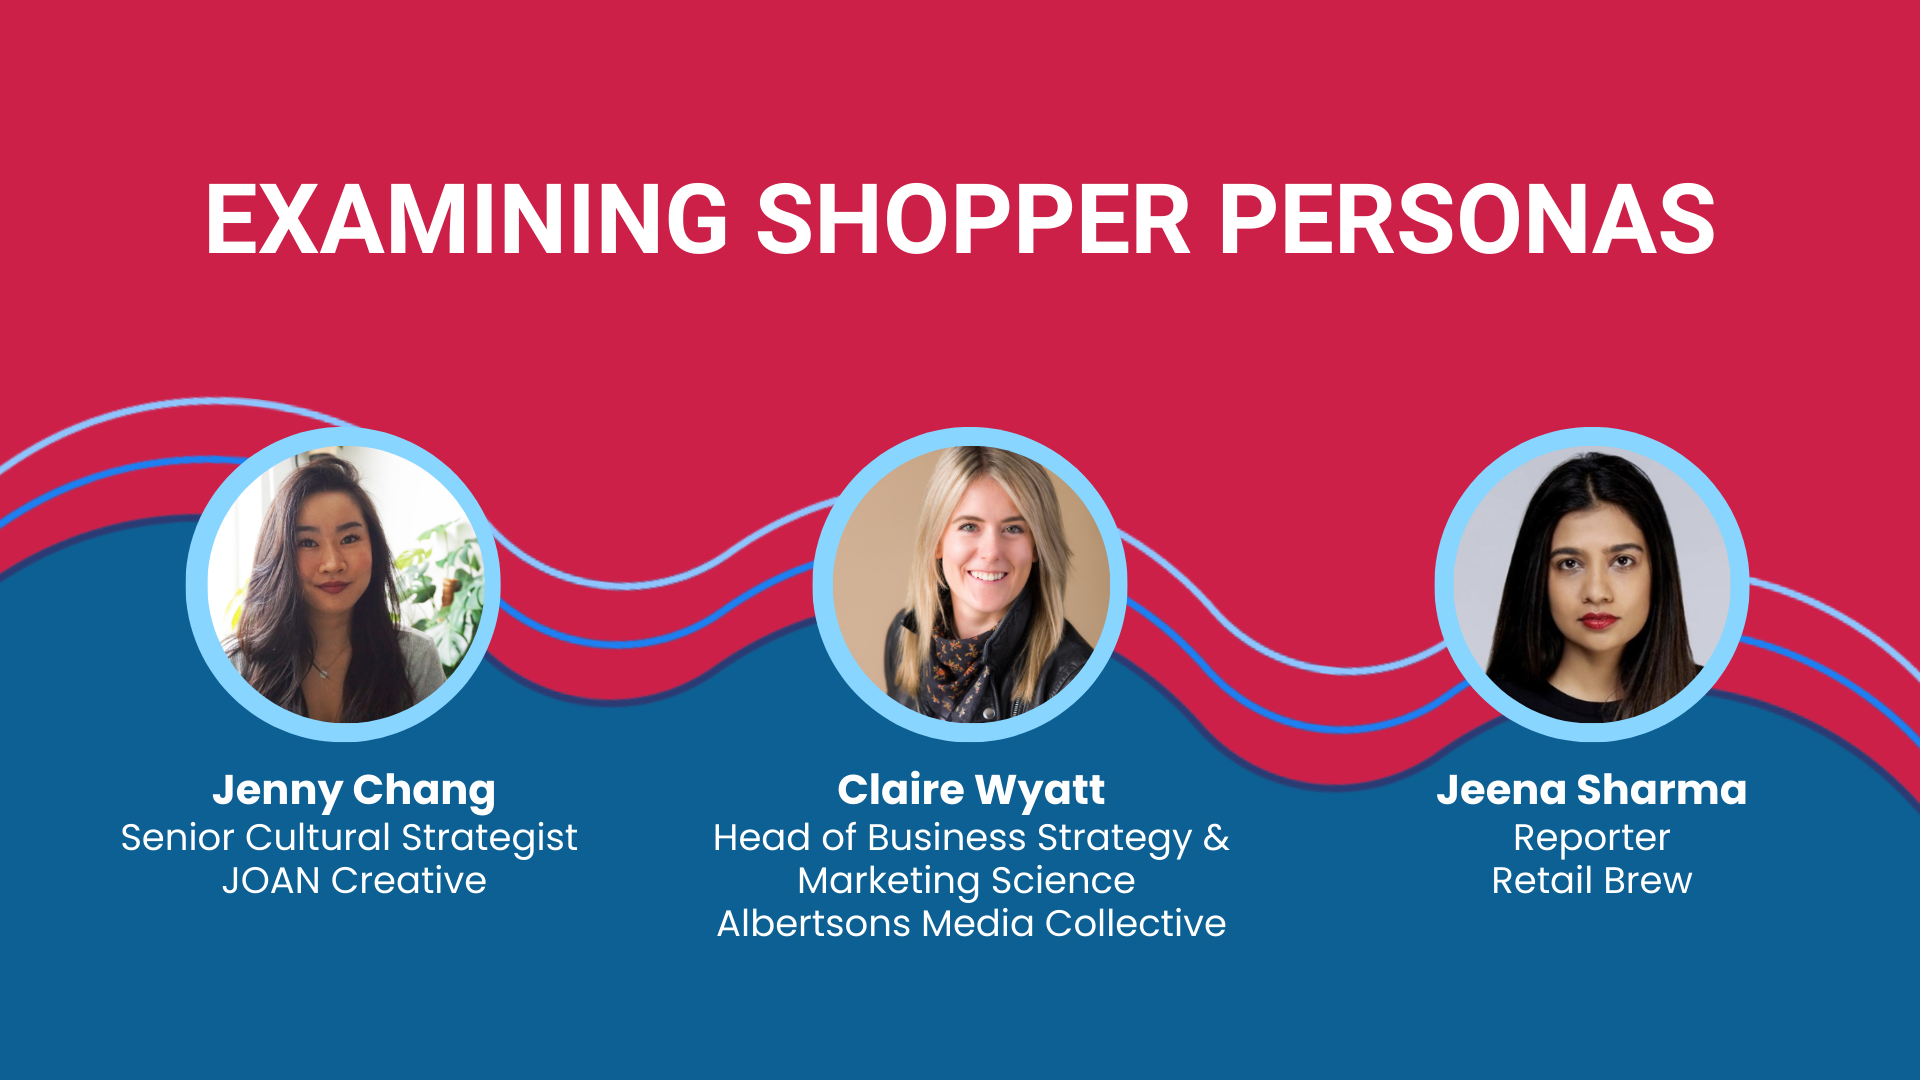 Examining Shopper Personas text with three headshots of Jenny Chang, Clair Wyatt, and Jeena Sharma